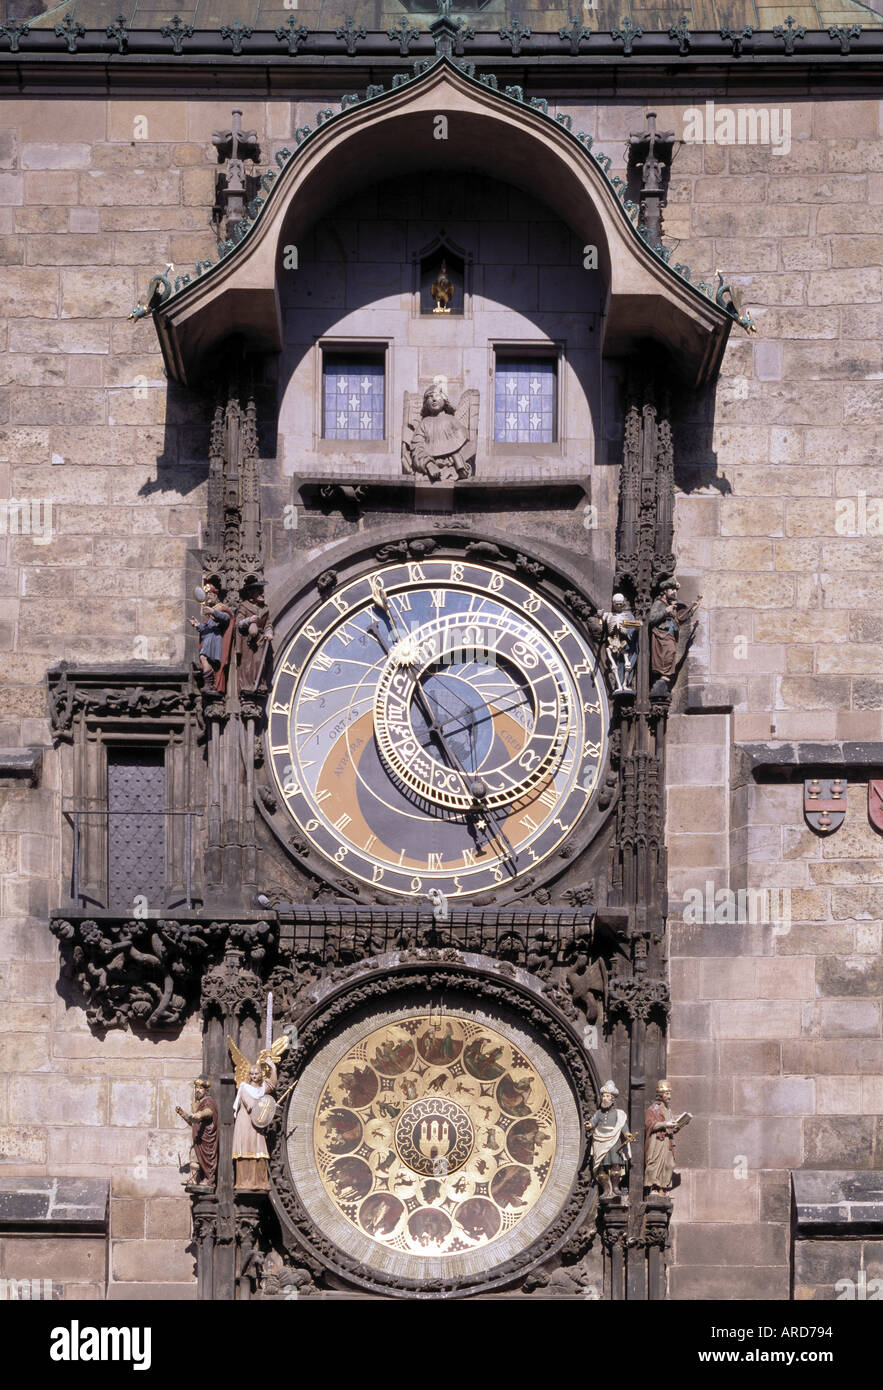 Prag, Rathaus, am Altstädter Ring, Astronomische Uhr Stock Photo - Alamy